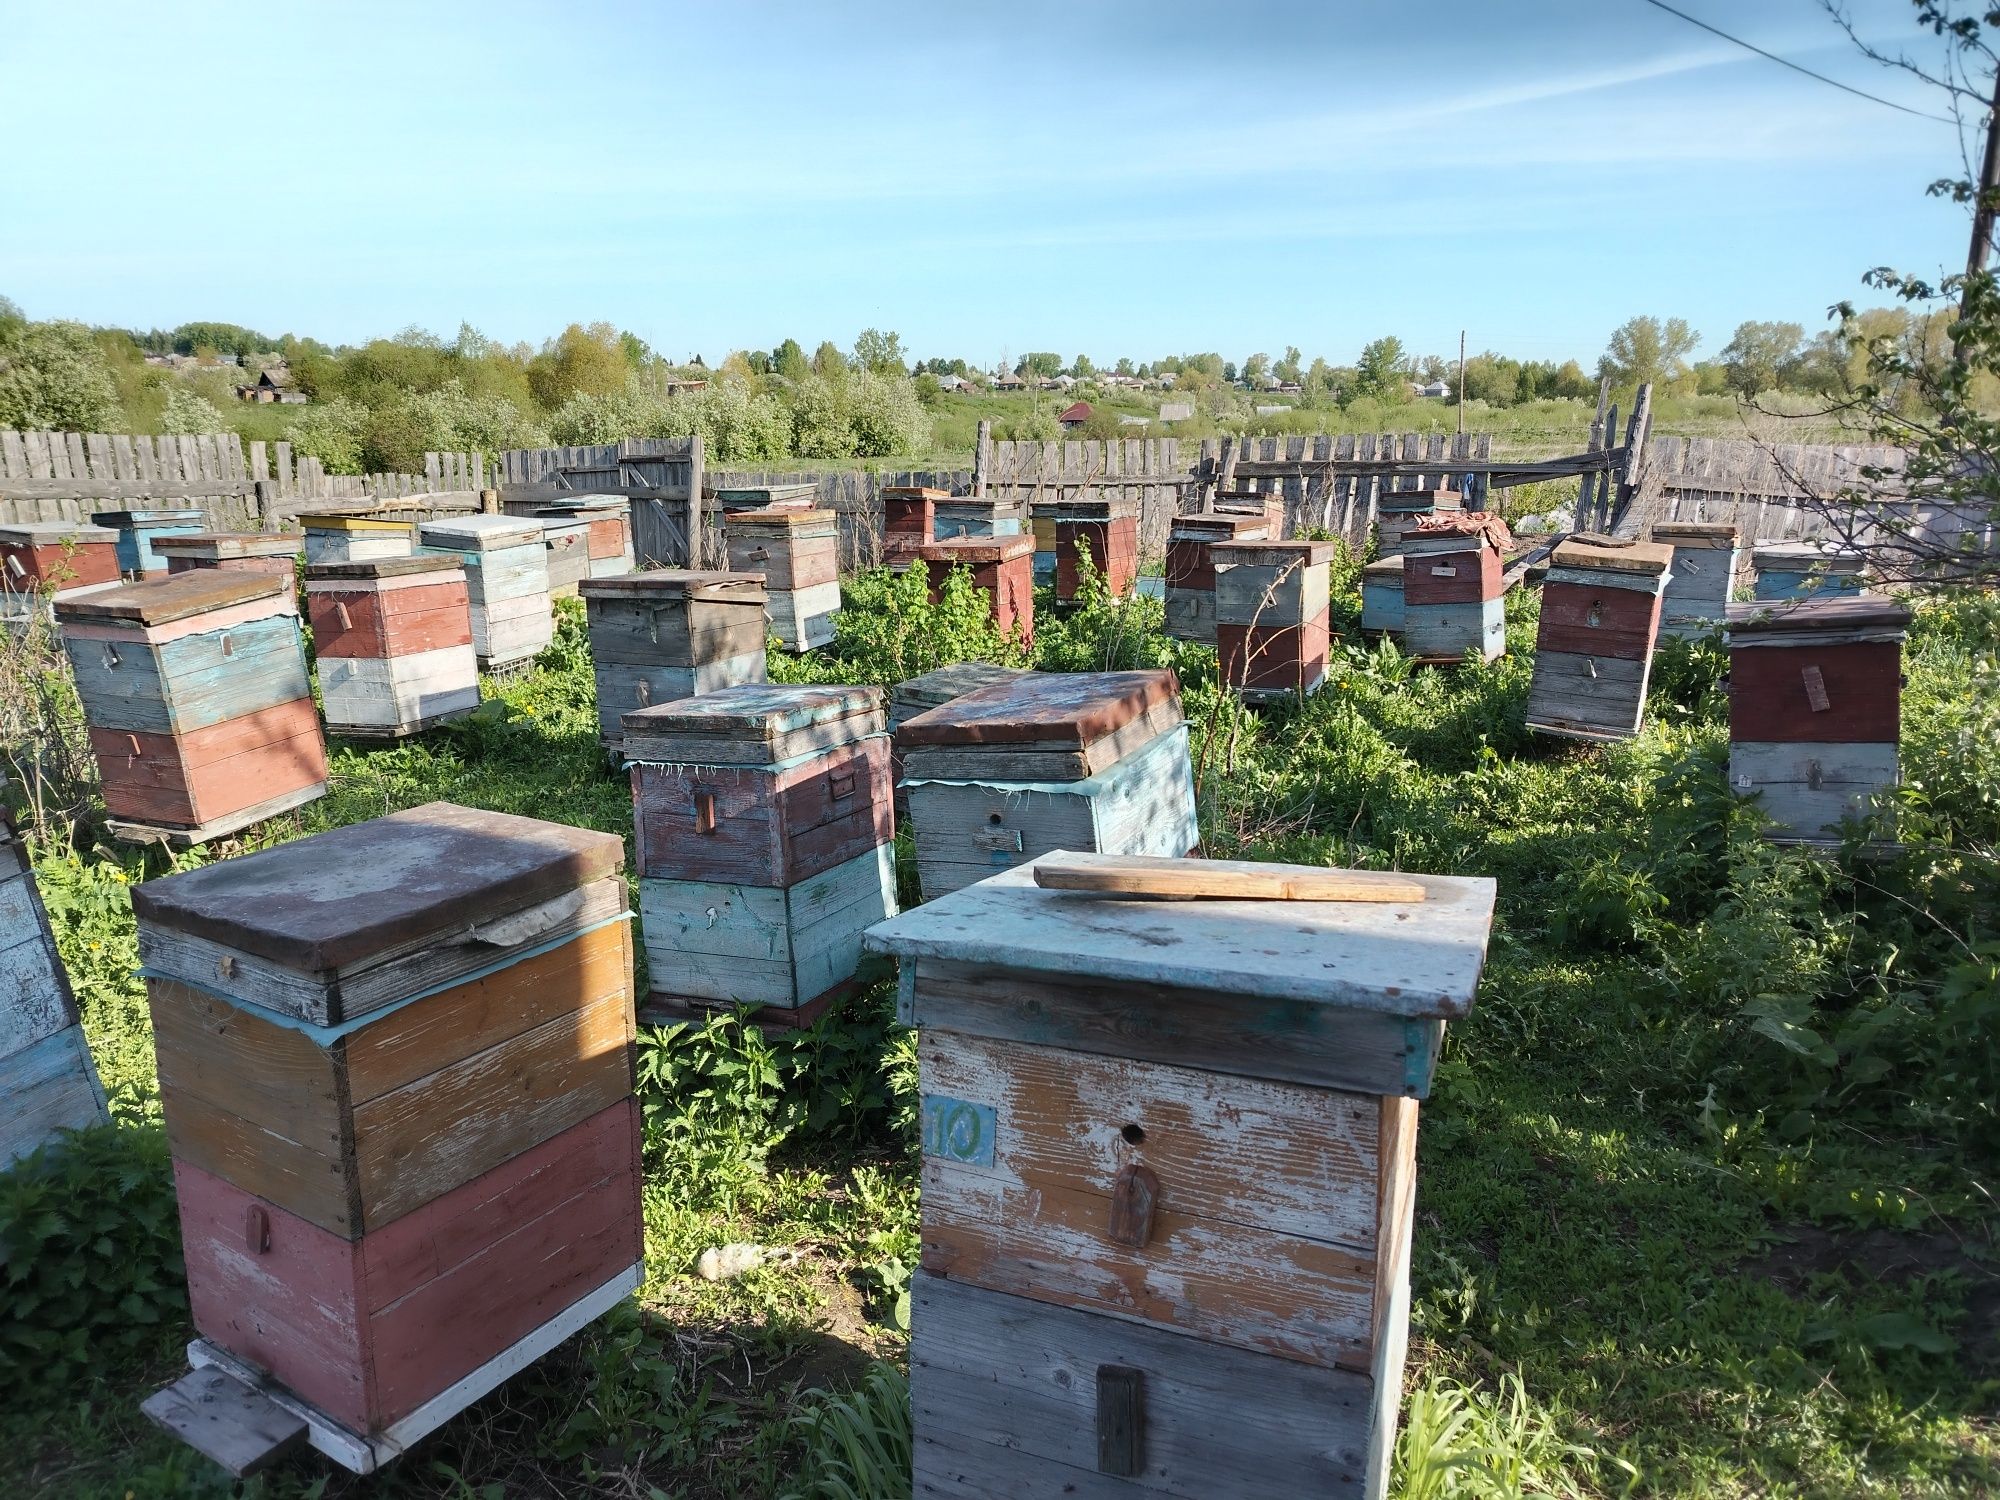 Продам пасеку пчелосемьи